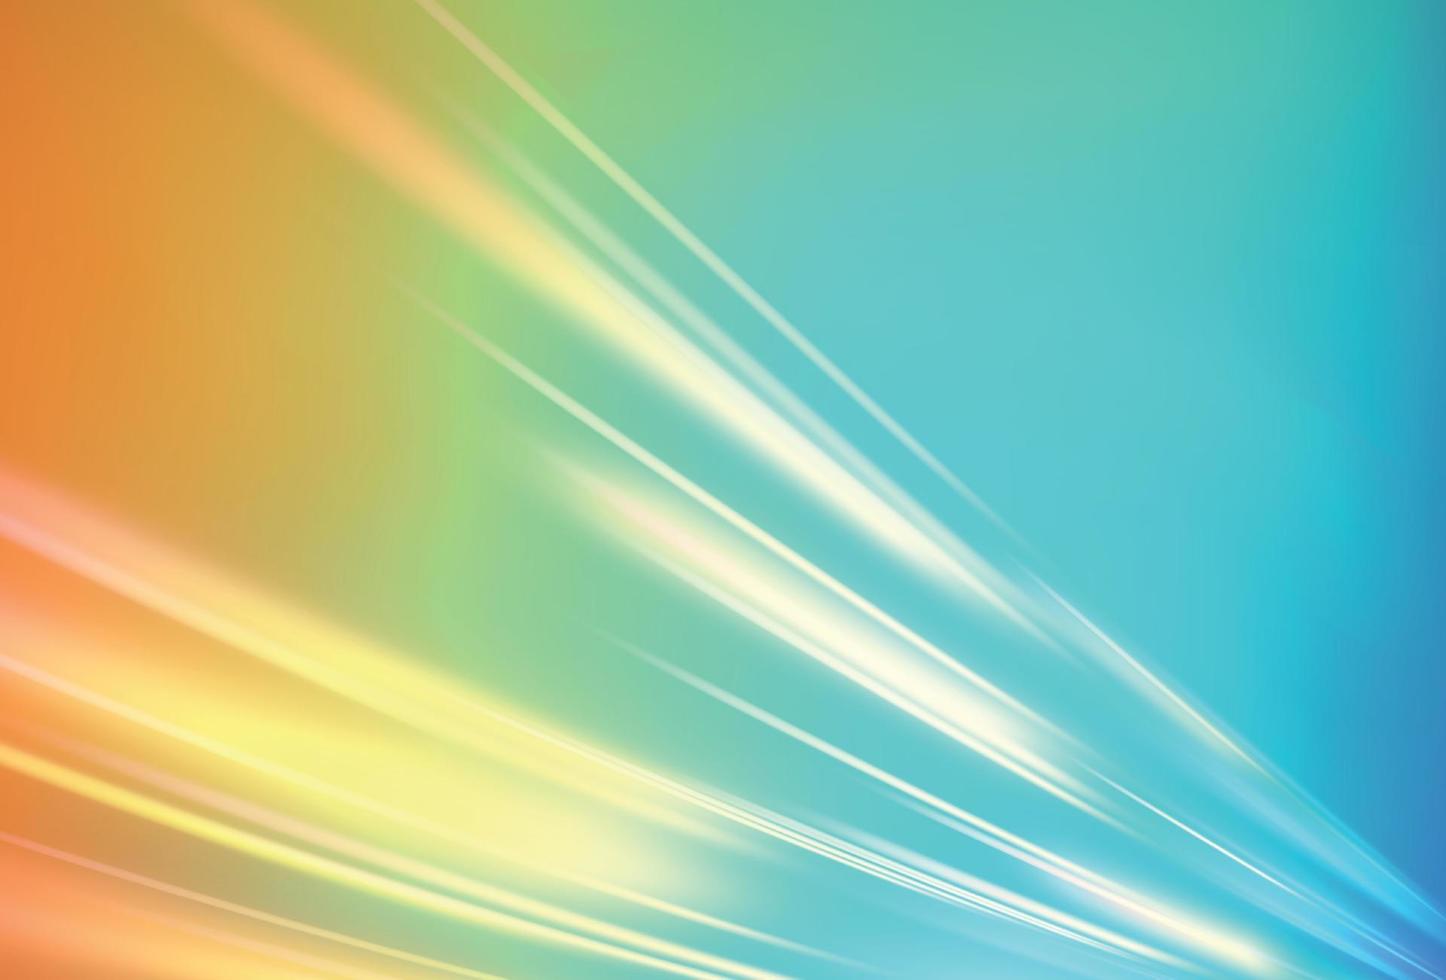 prismabackground, textura de prisma. luzes do arco-íris de cristal, efeitos de refração vetor